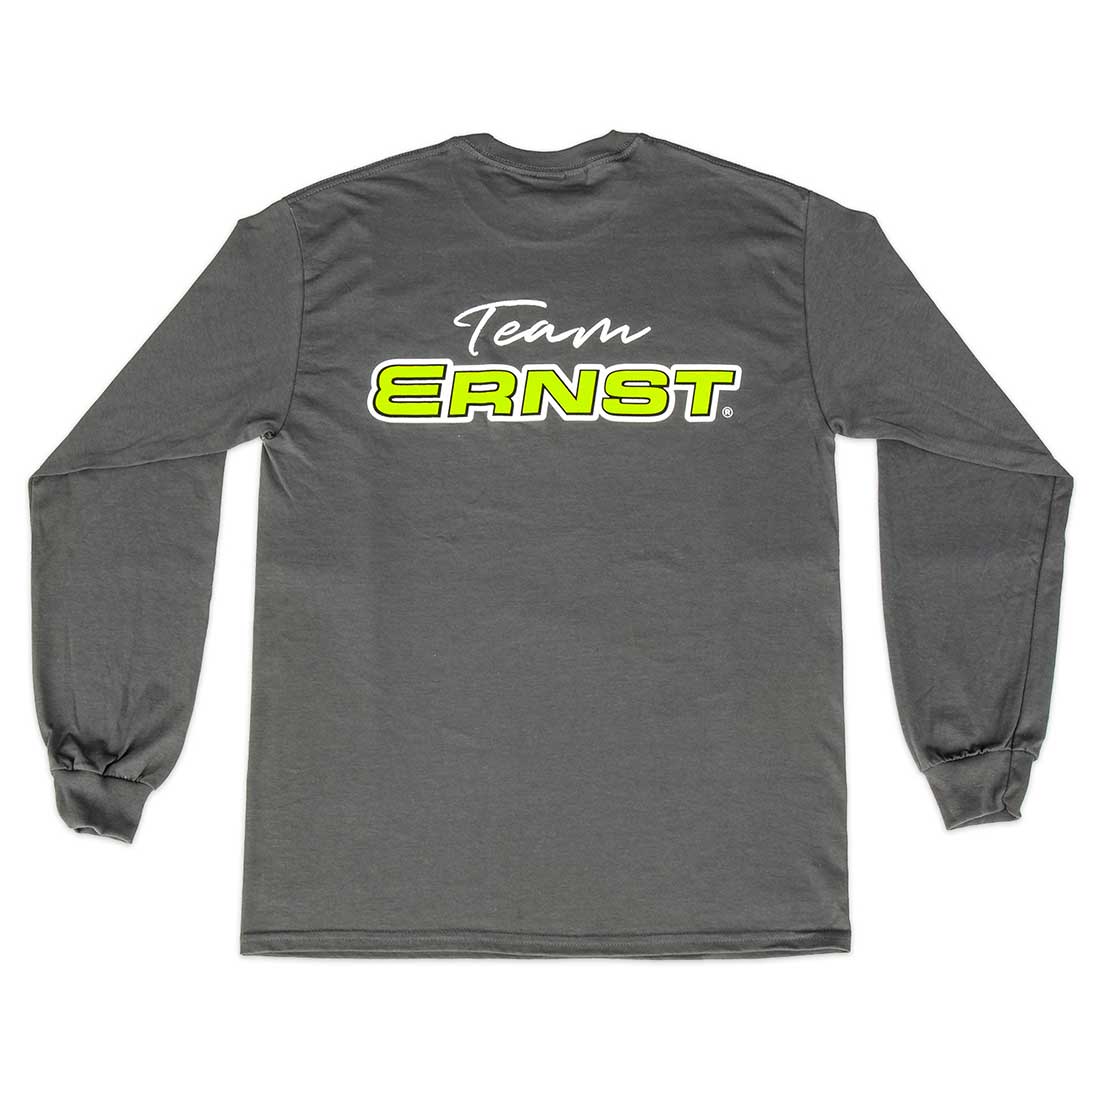 Ernst Long Sleeve shirt